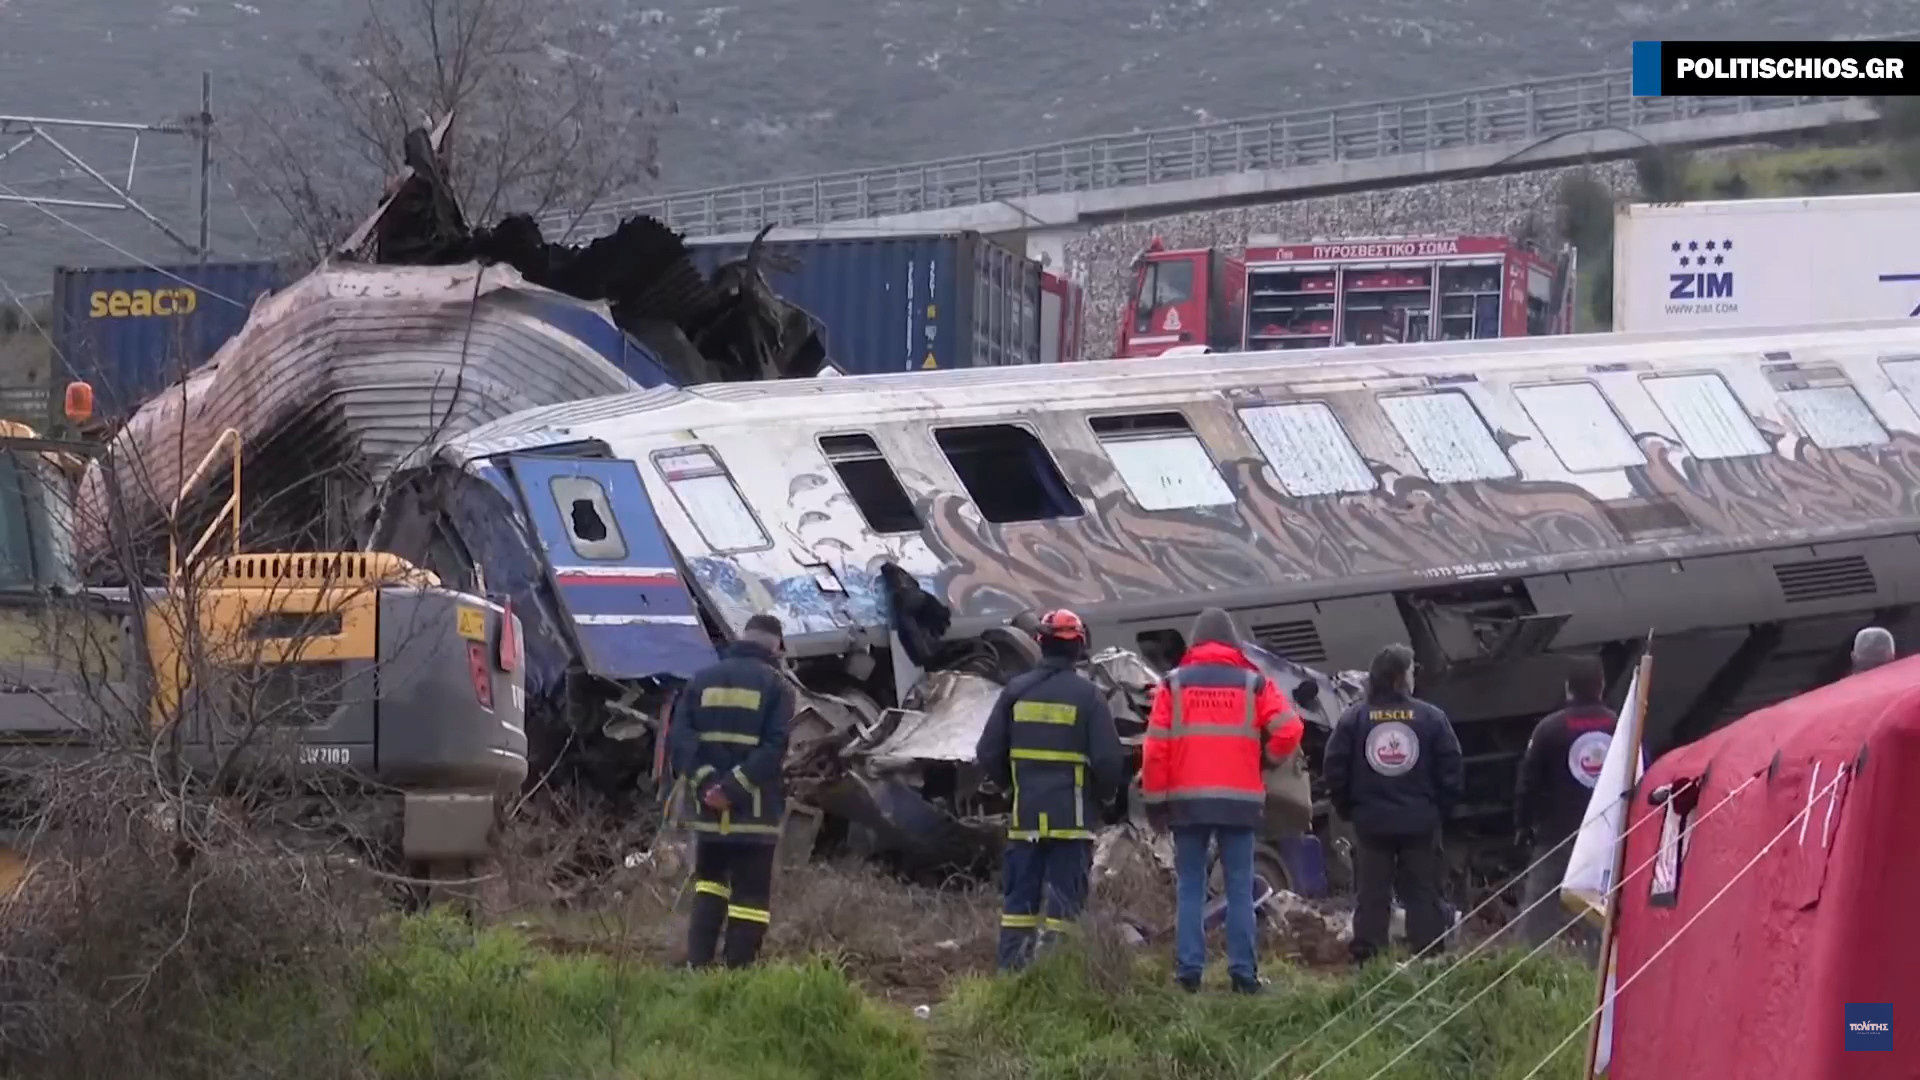 Среди погибших в поезде в Греции много детей. «Аморфную массу» удаляют по частям